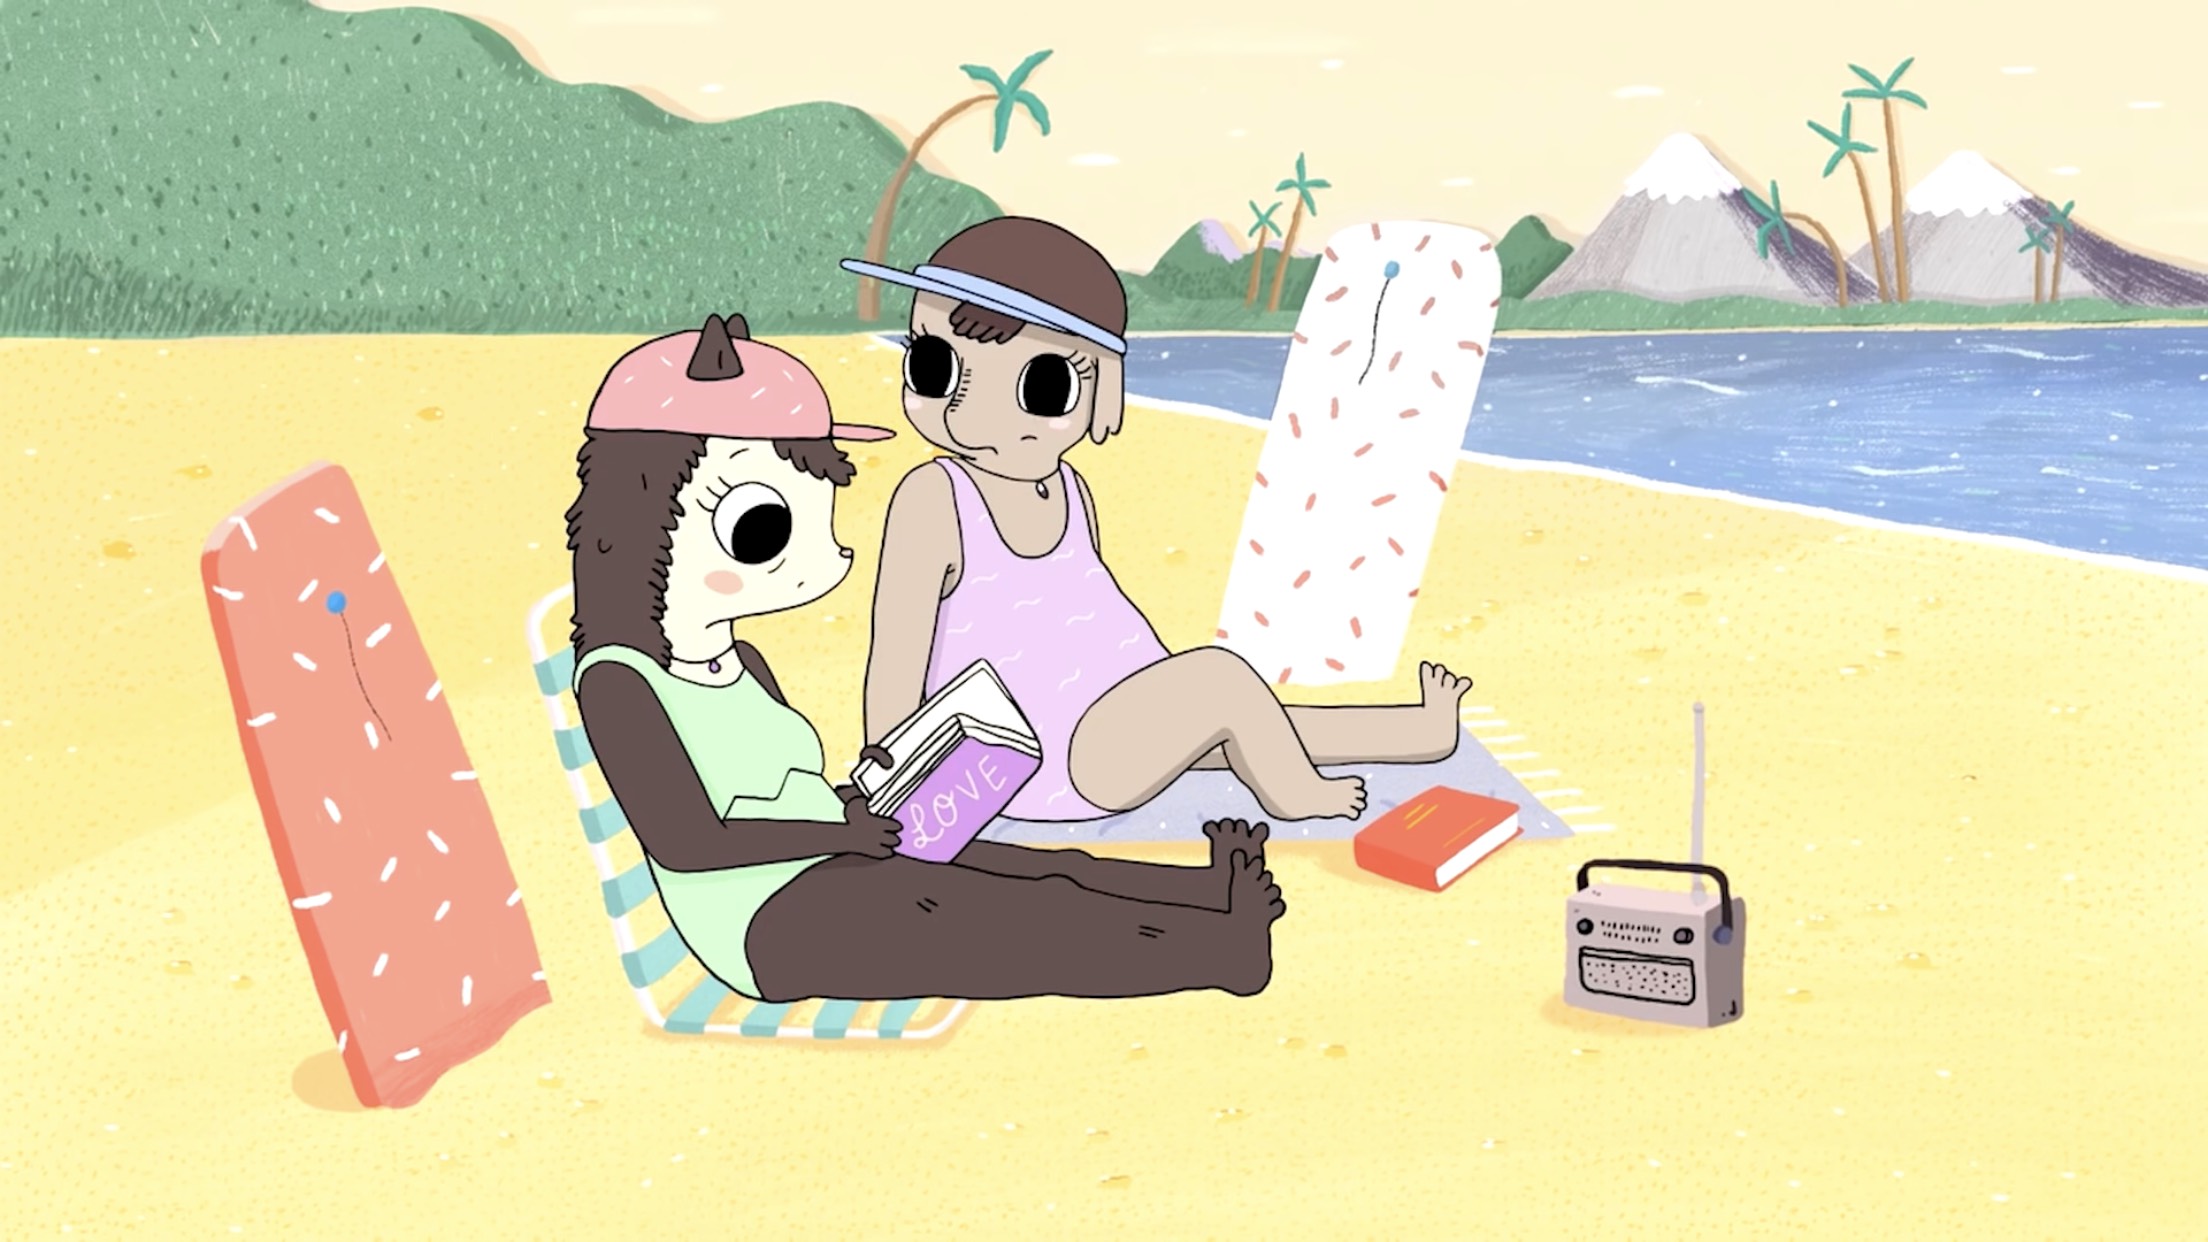 Смотреть Секс В Мультфильме Summer Camp Island.